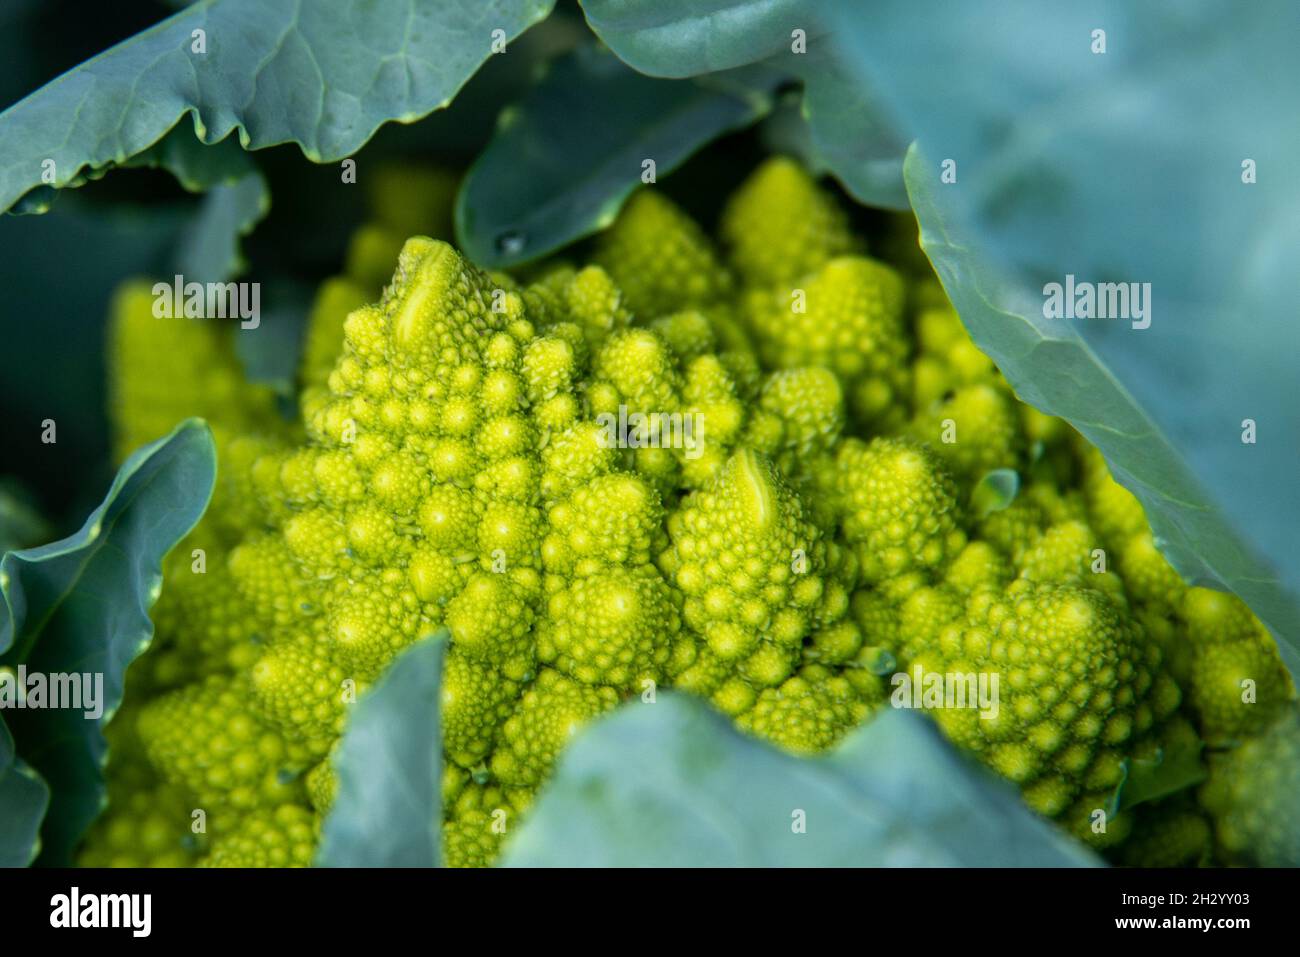 Un verde romanesco cavolfiore vegetale circondato da grandi foglie verdi. La pianta ha un modello a spirale di germogli che formano la testa del vegetariano. Foto Stock